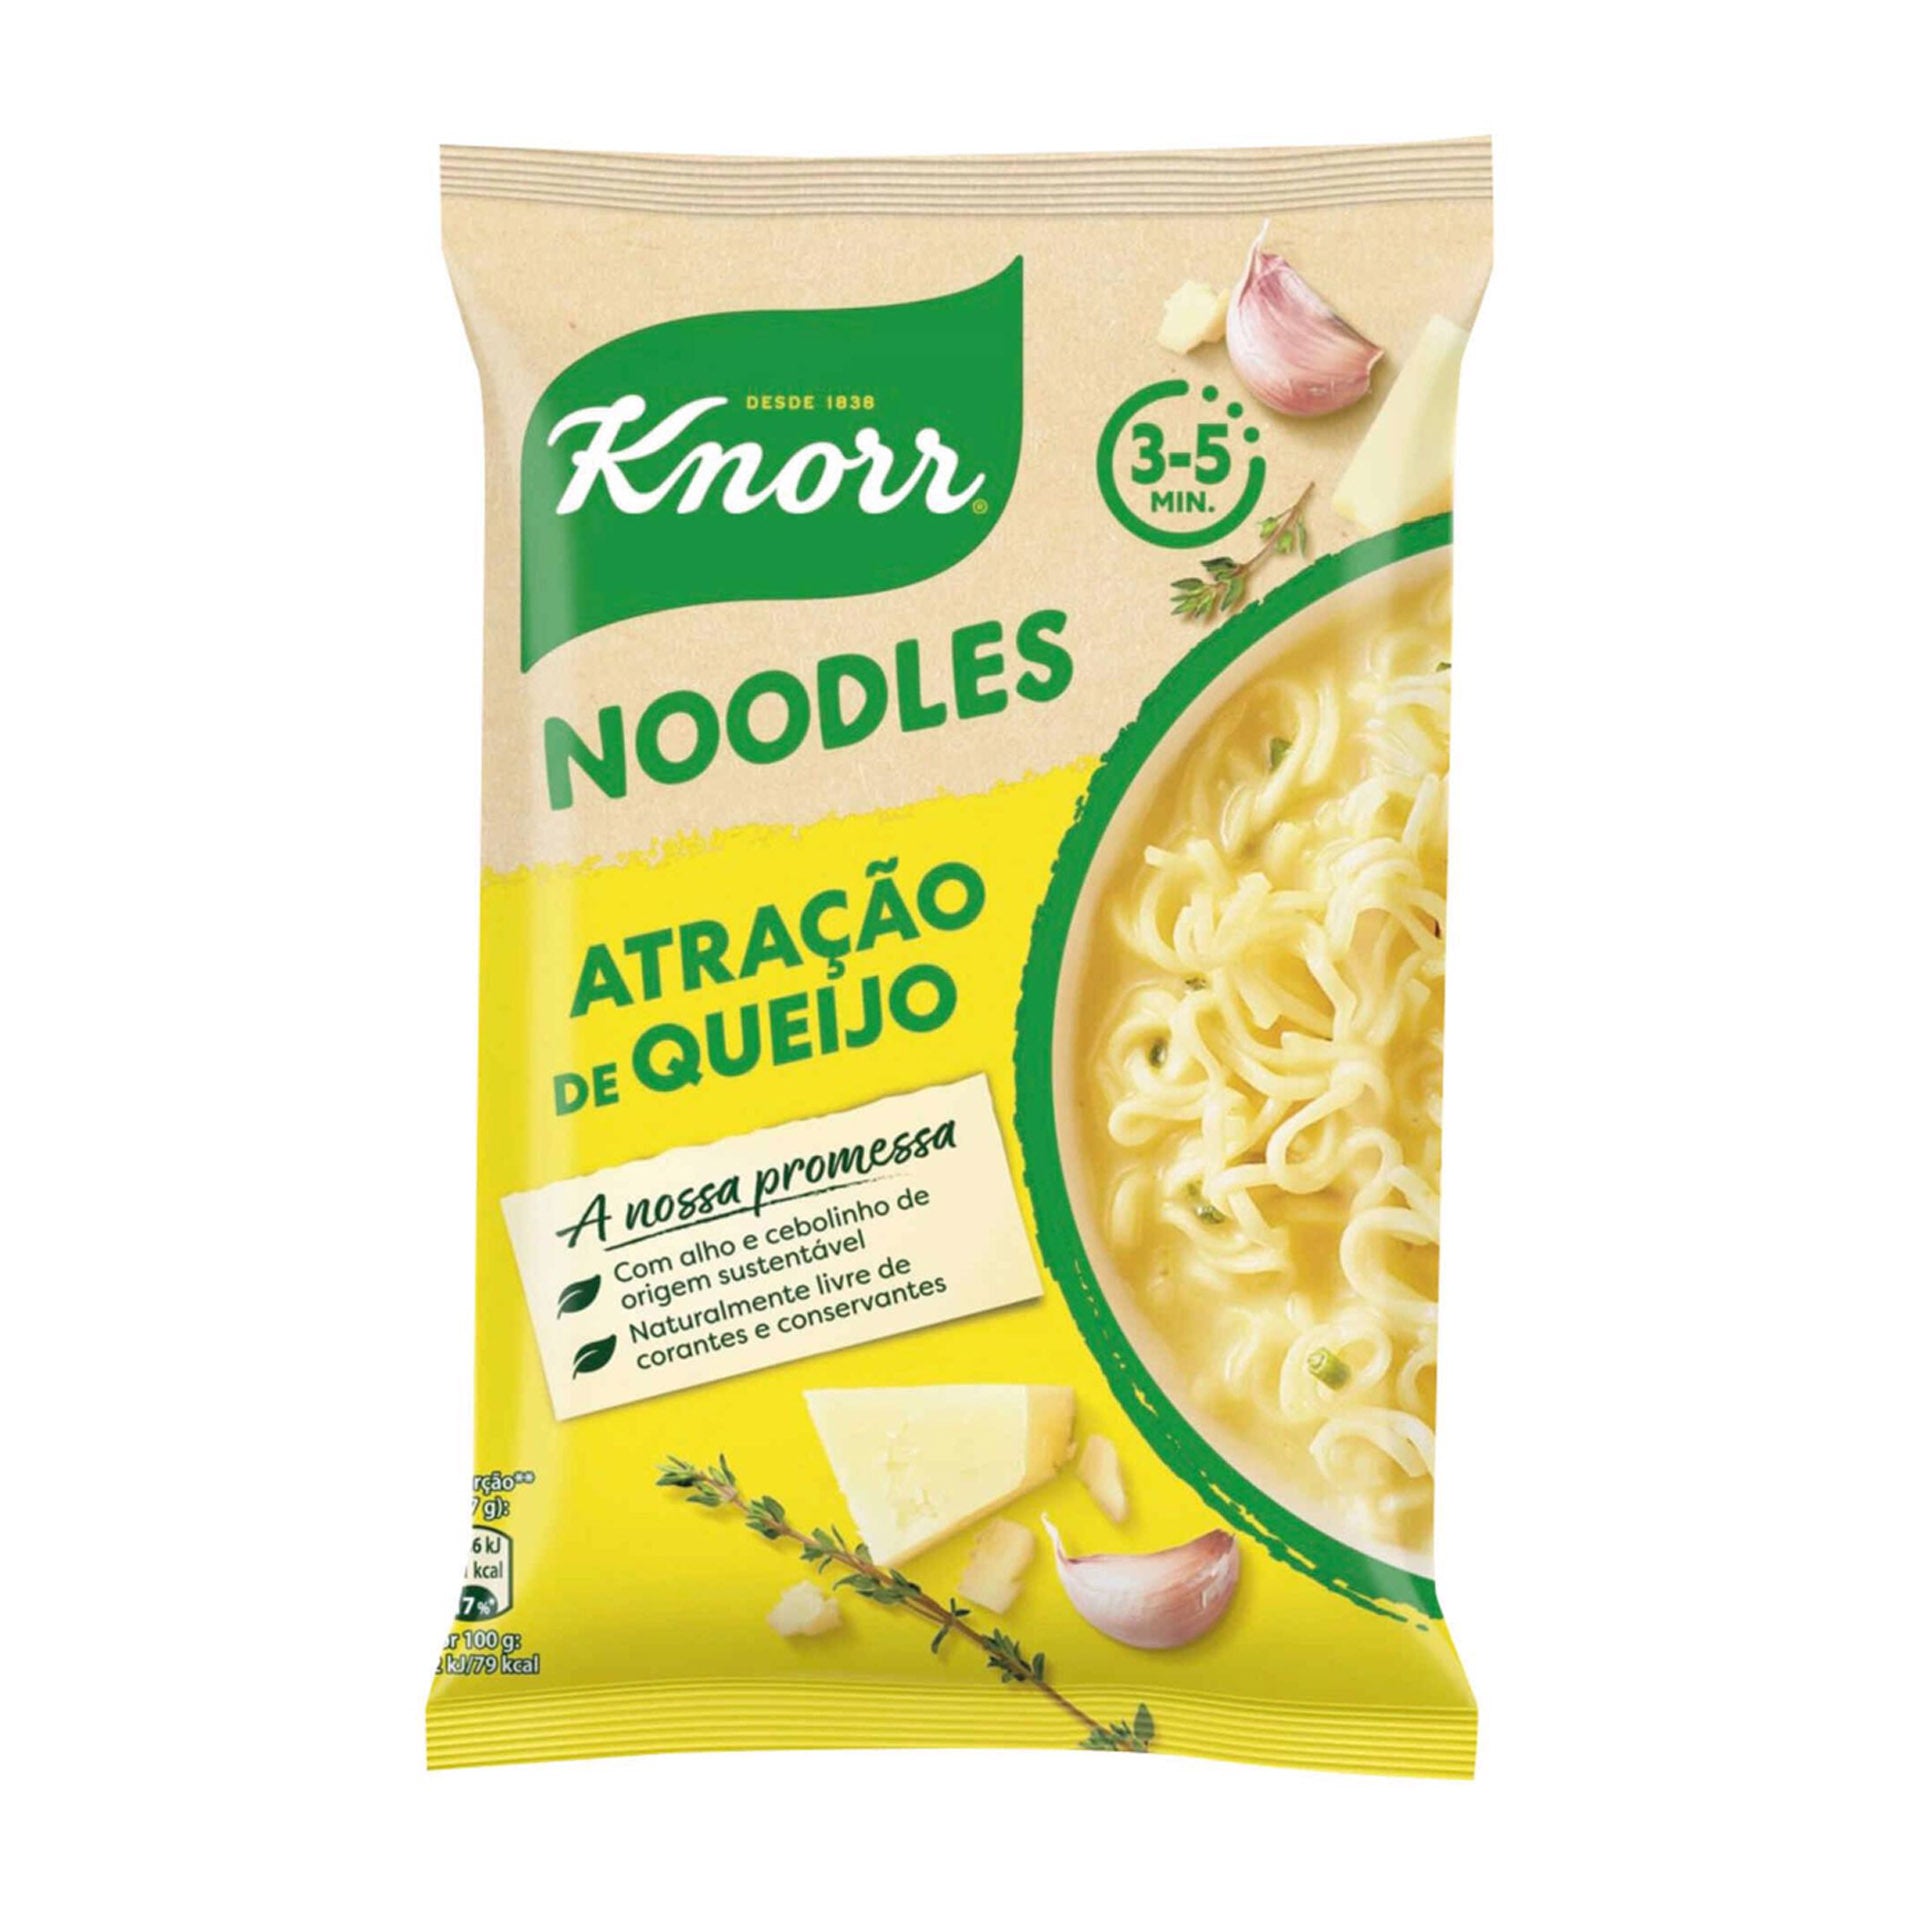 Knorr Noodles Atração de Queijo 70 gr - Pack 2 x 70 gr